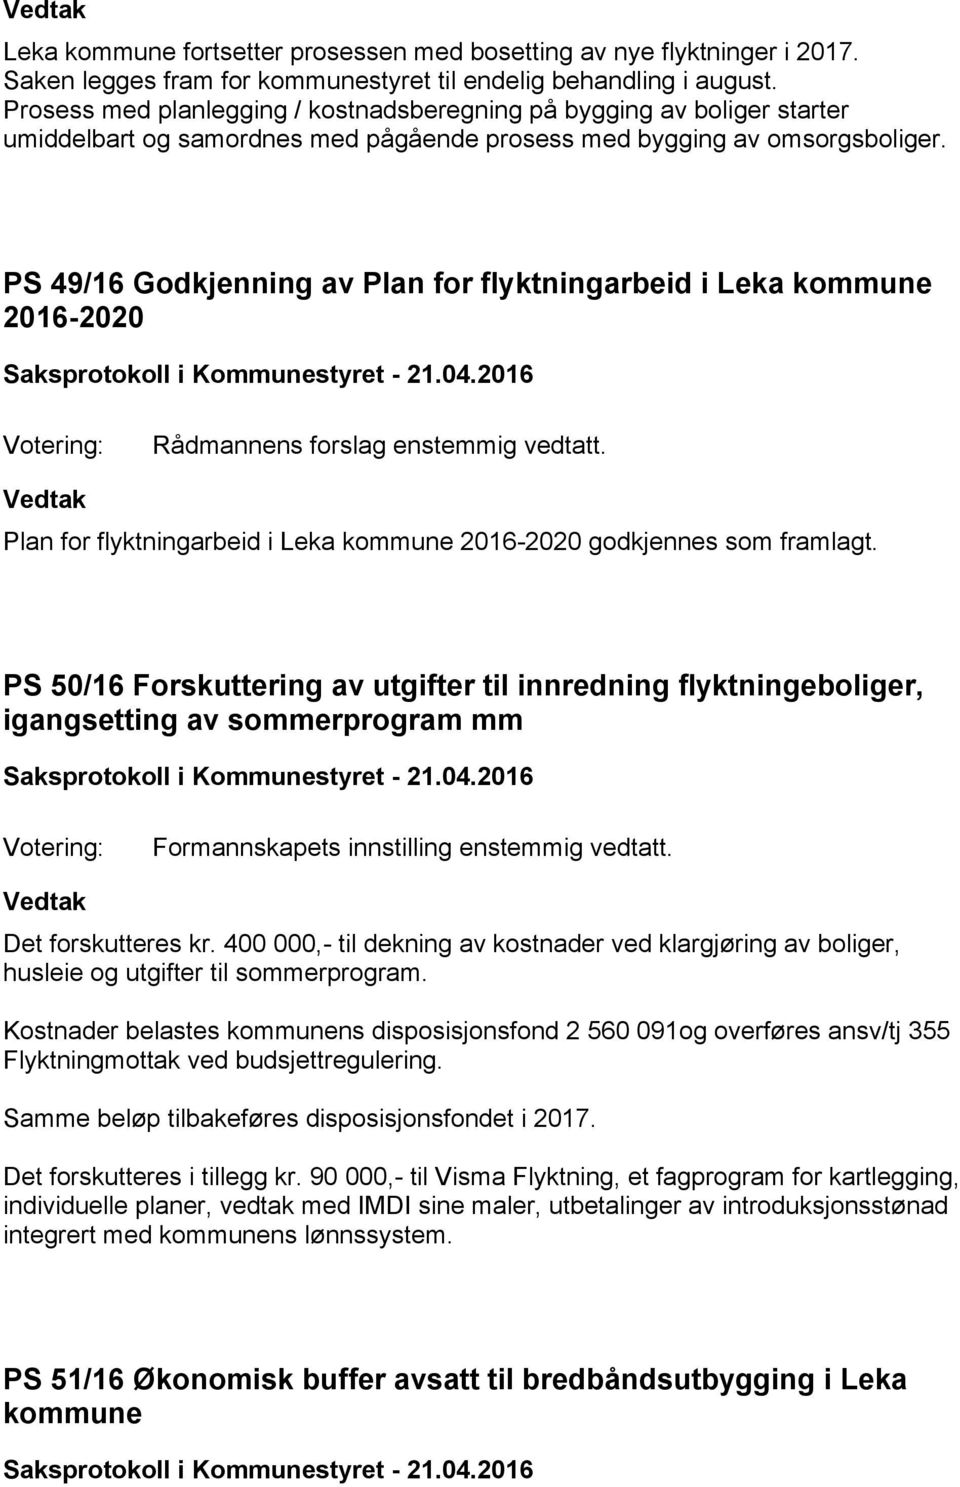 PS 49/16 Godkjenning av Plan for flyktningarbeid i Leka kommune 2016-2020 Rådmannens forslag enstemmig vedtatt. Plan for flyktningarbeid i Leka kommune 2016-2020 godkjennes som framlagt.